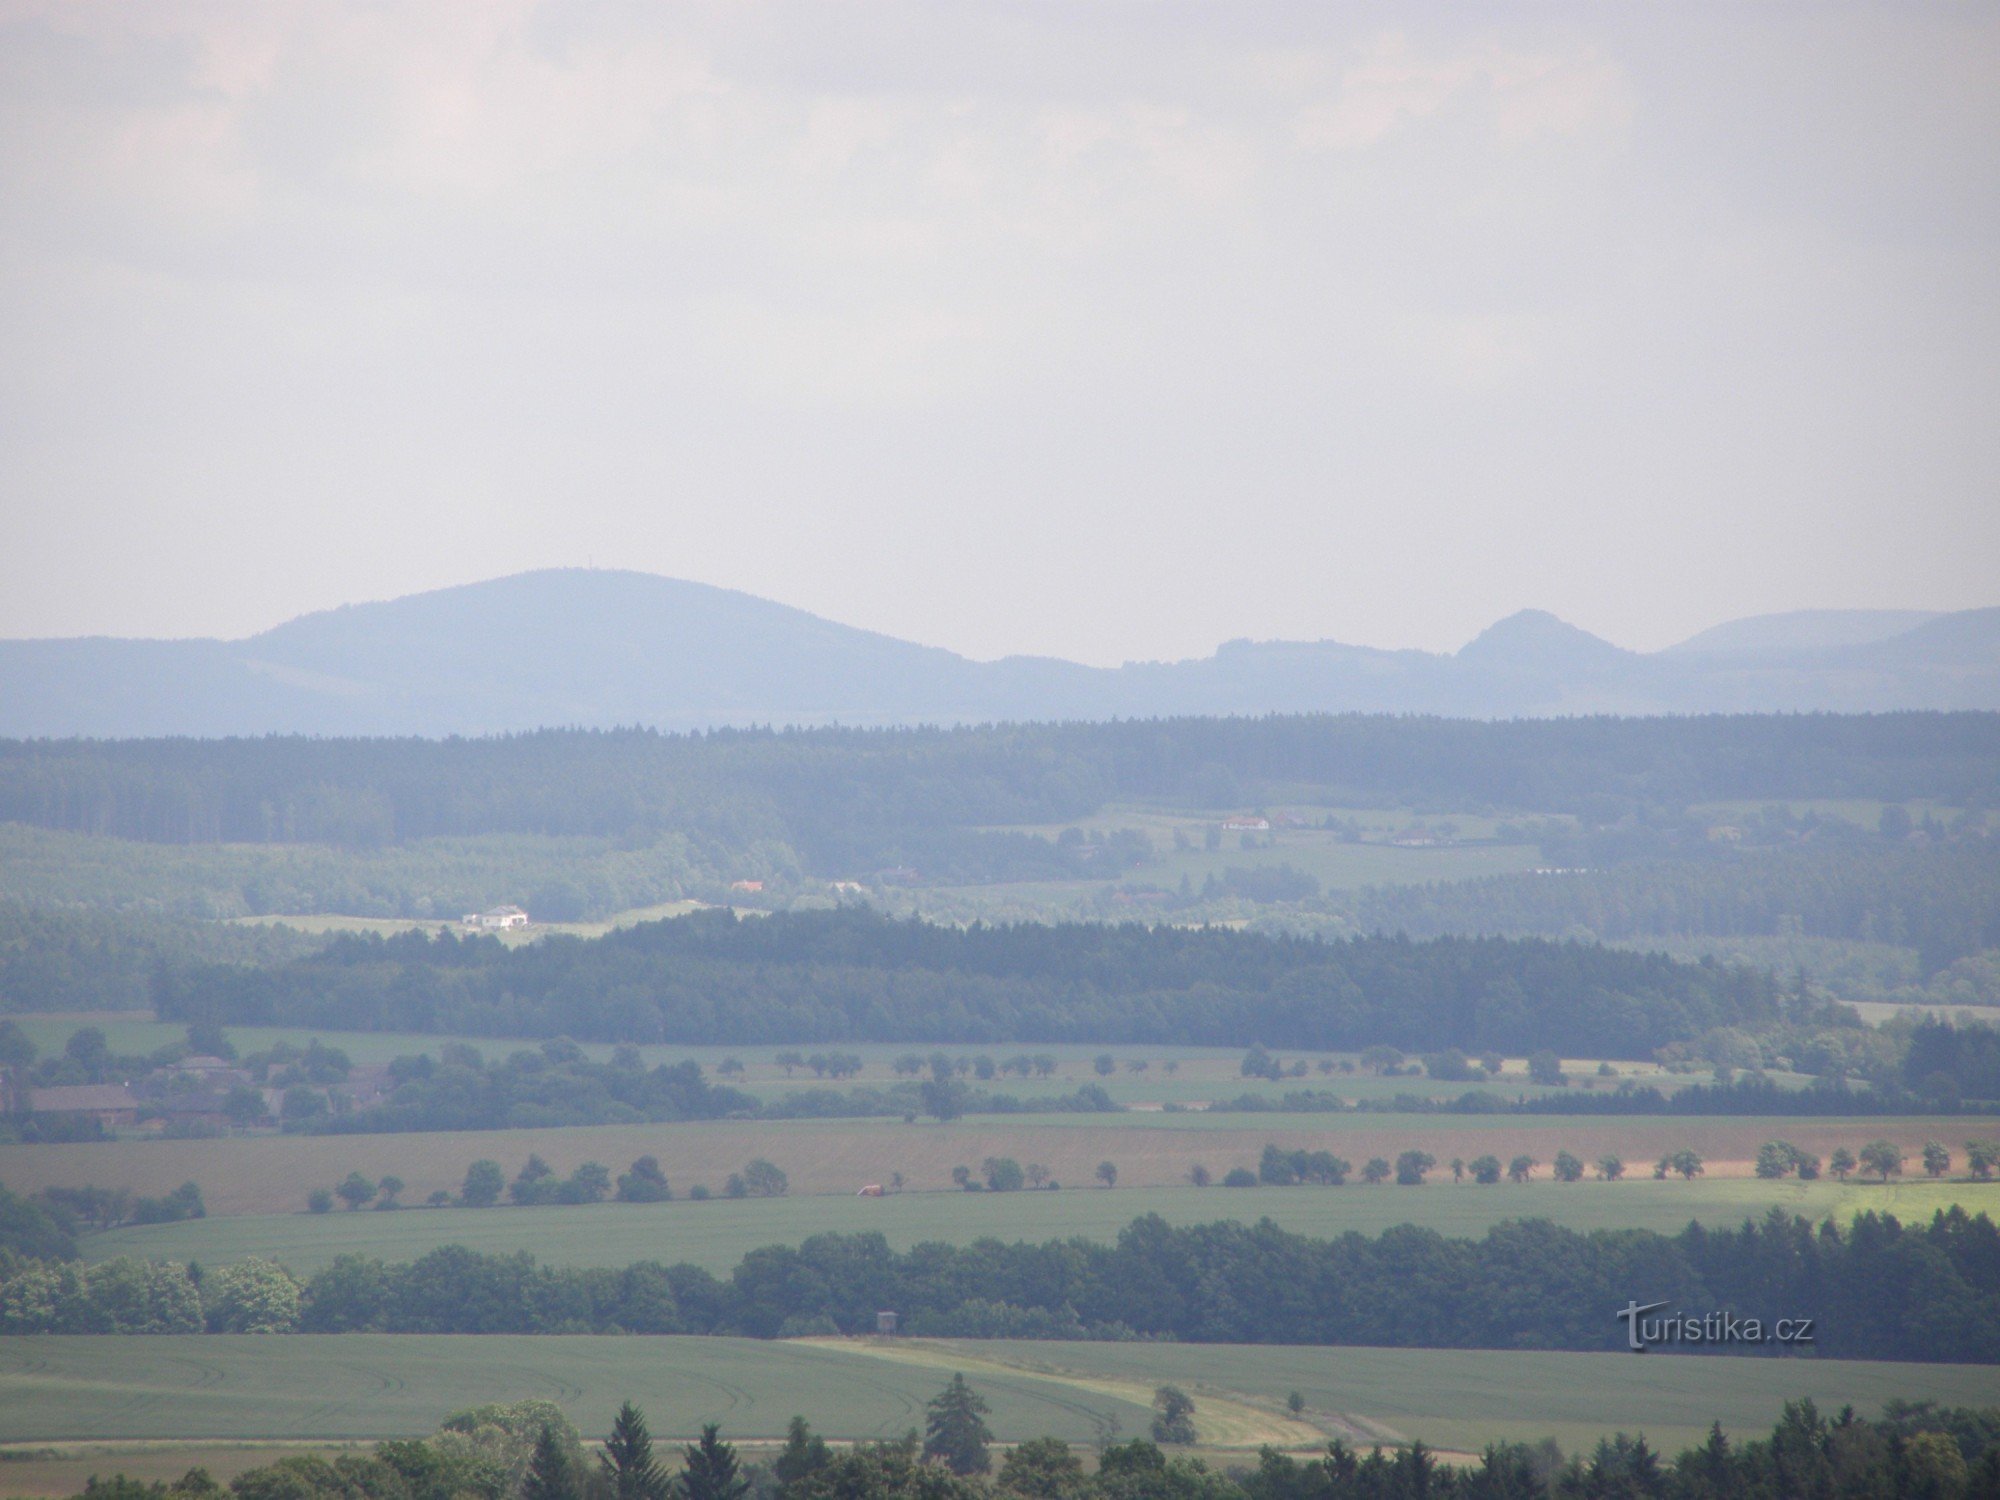 Barunča's viewpoint near Horiček